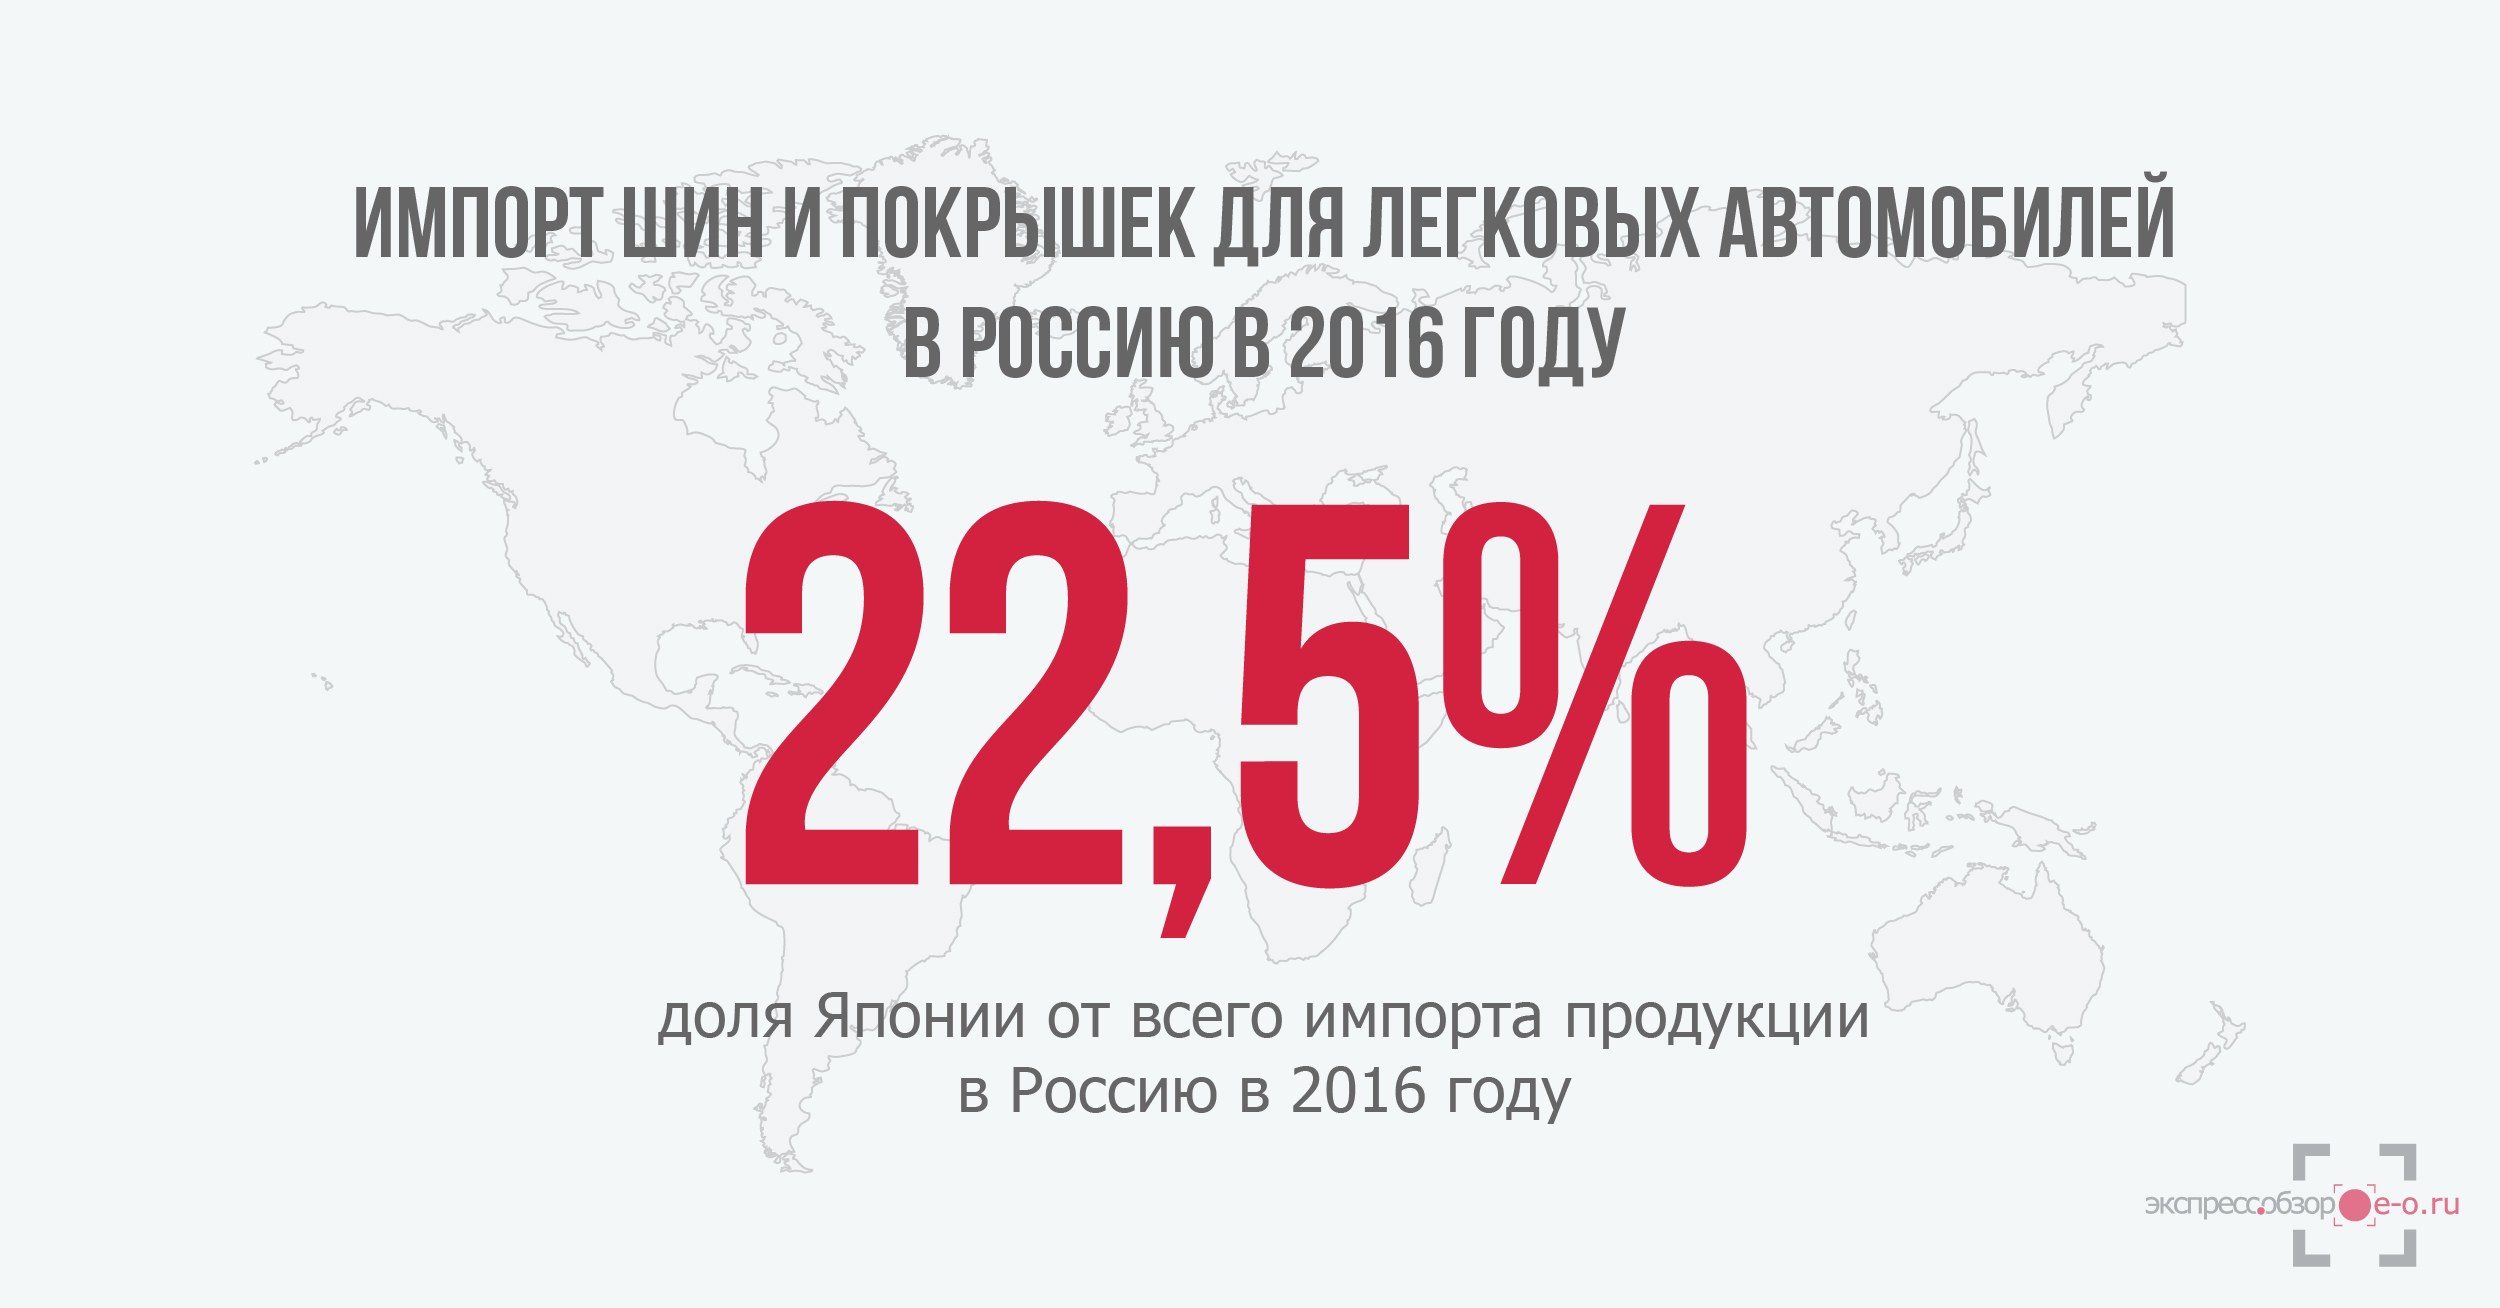 импорт шин и покрышек для легковых автомобилей в Россию в 2016 году